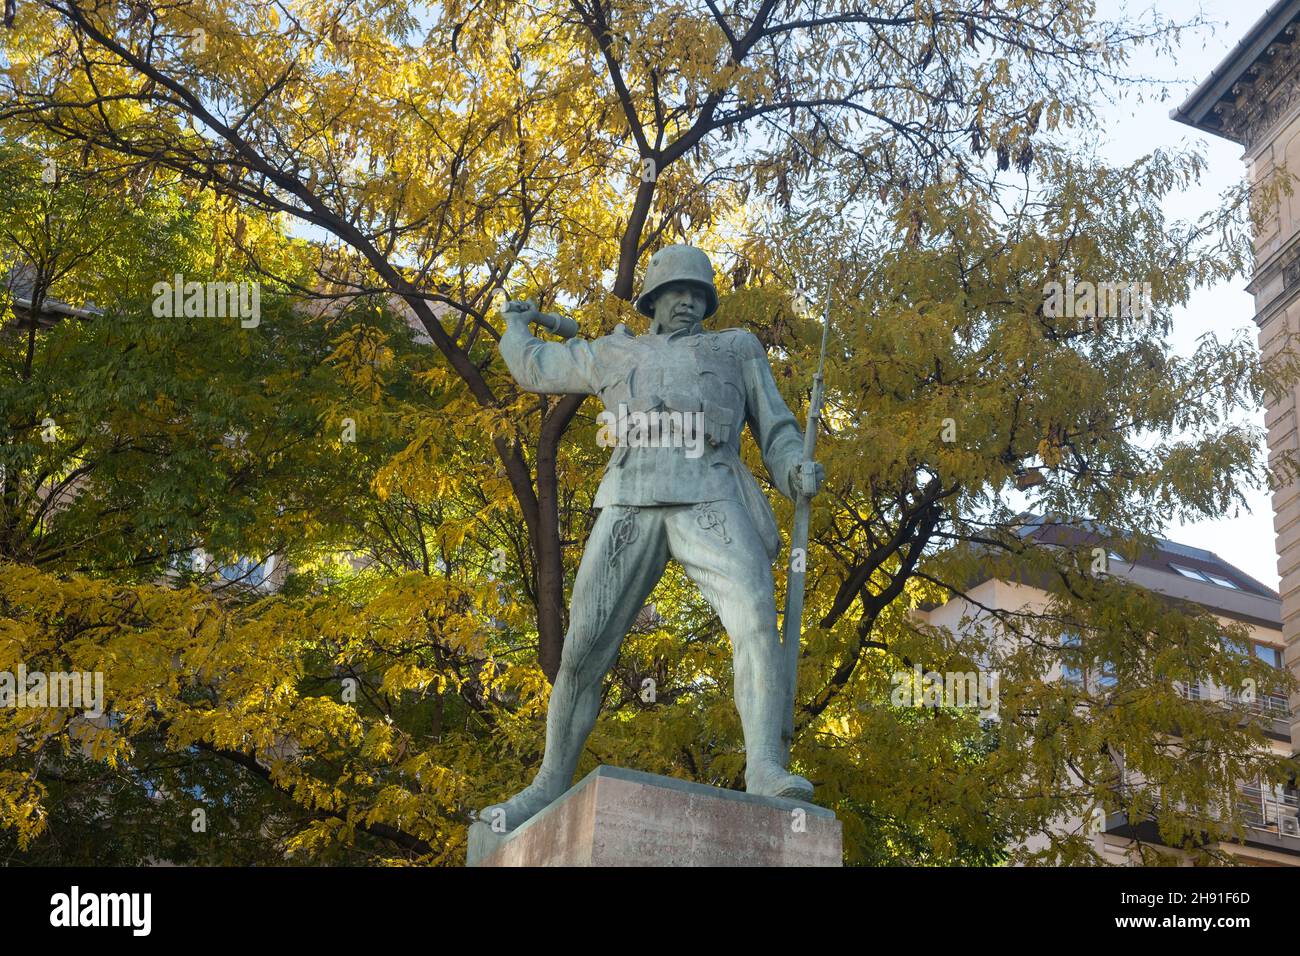 Budapest, Hungría - 1 de noviembre de 2021: Escultura de soldado con monumento a la granada, Editorial ilustrativa. Foto de stock